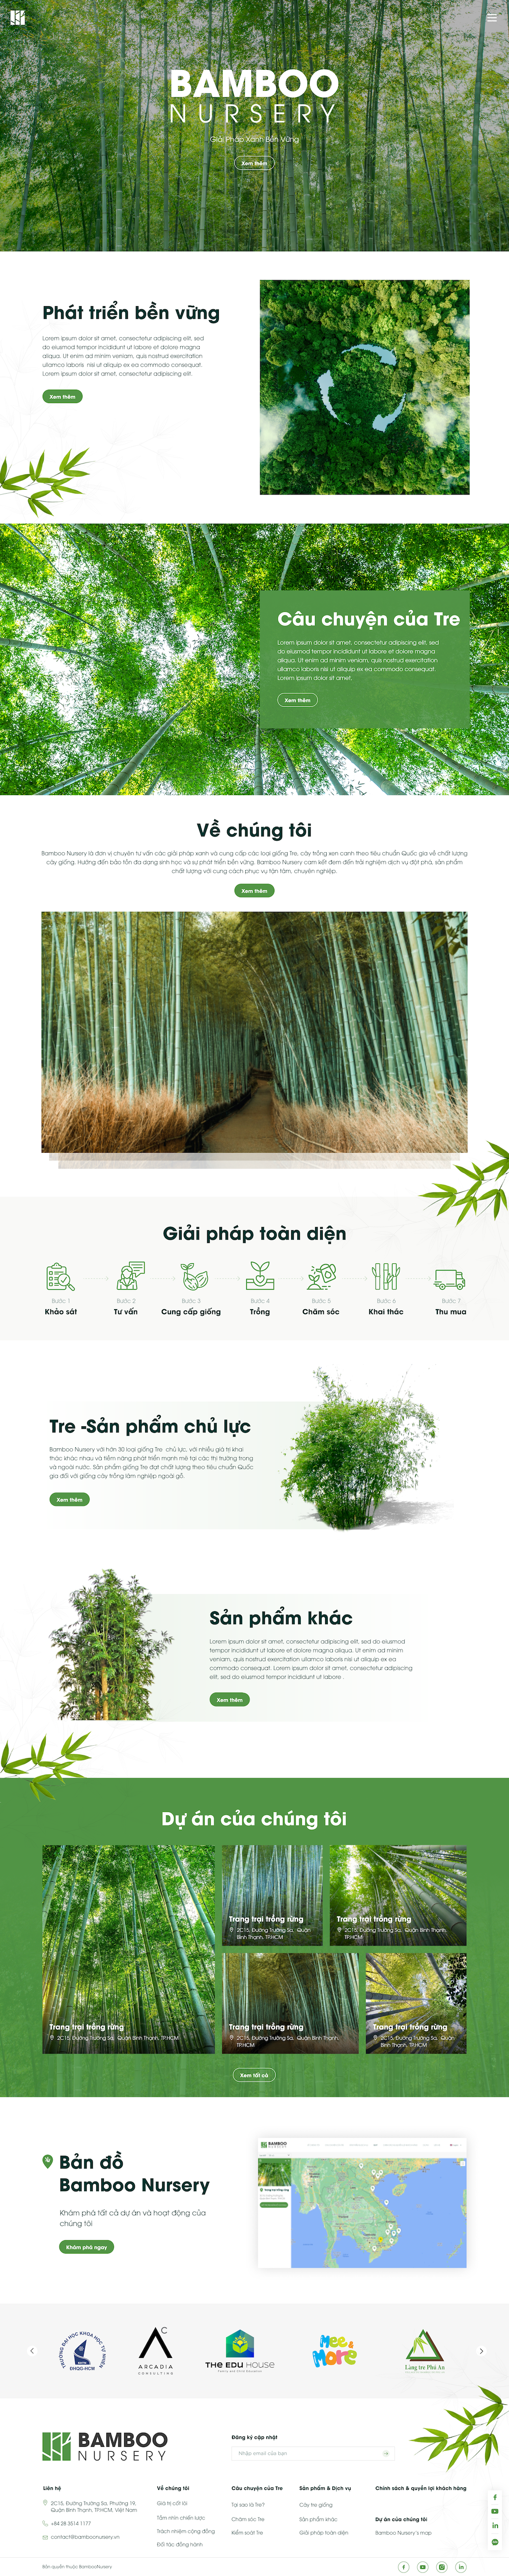 Dự án giới thiệu công ty – Bamboo Nursery